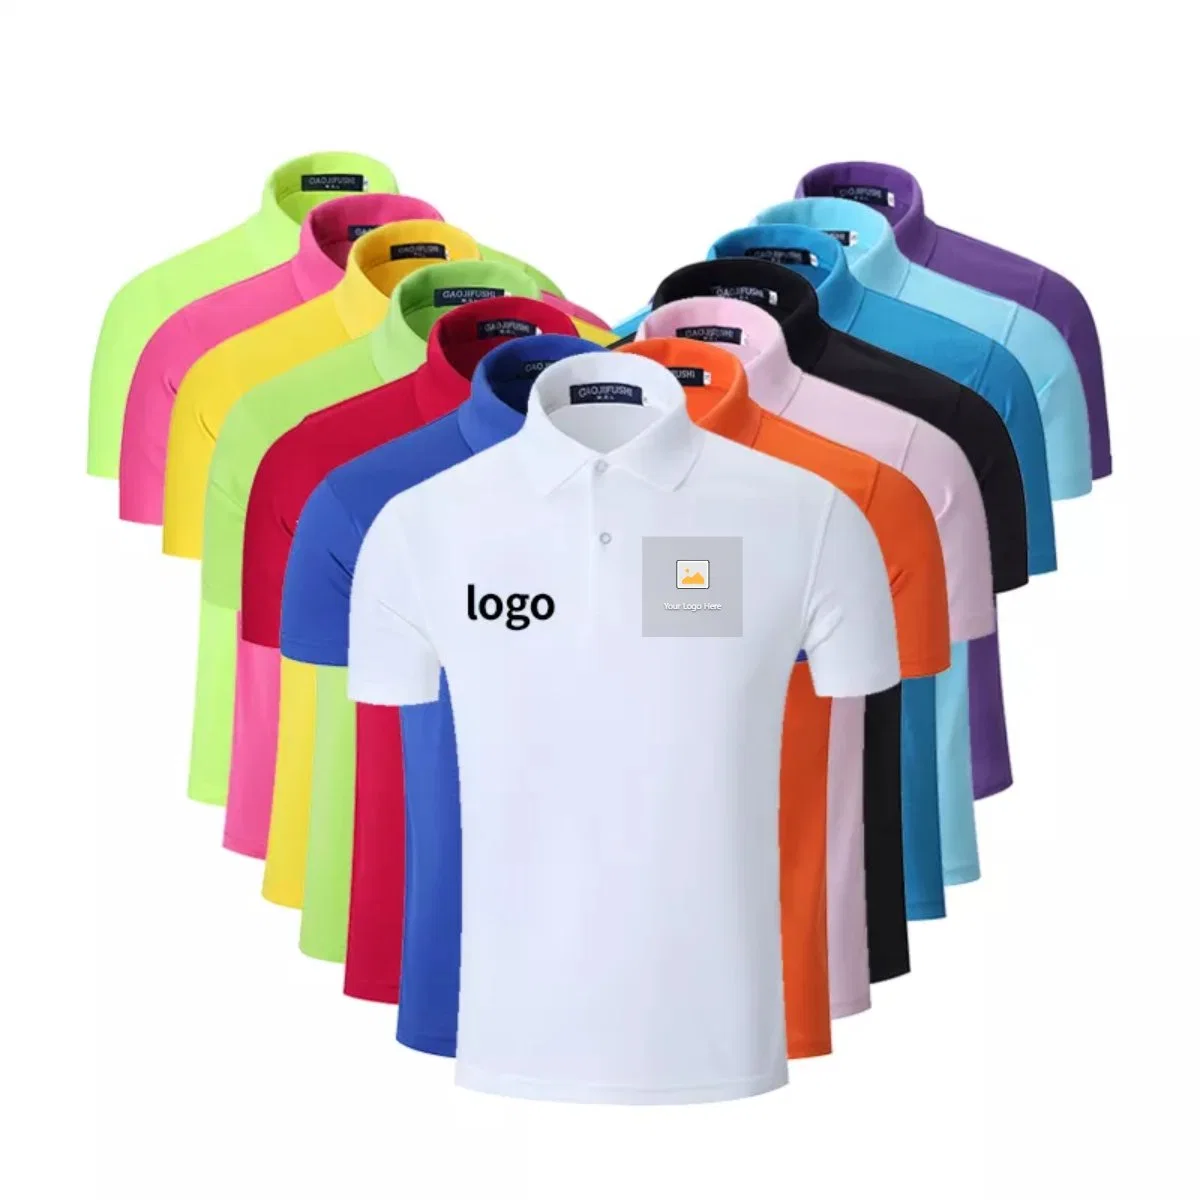 Promoción de ventas de logotipo personalizado en blanco liso de color sólido Piqué bordado de poliéster lavado Camiseta camisetas de algodón de los hombres camisas Polo